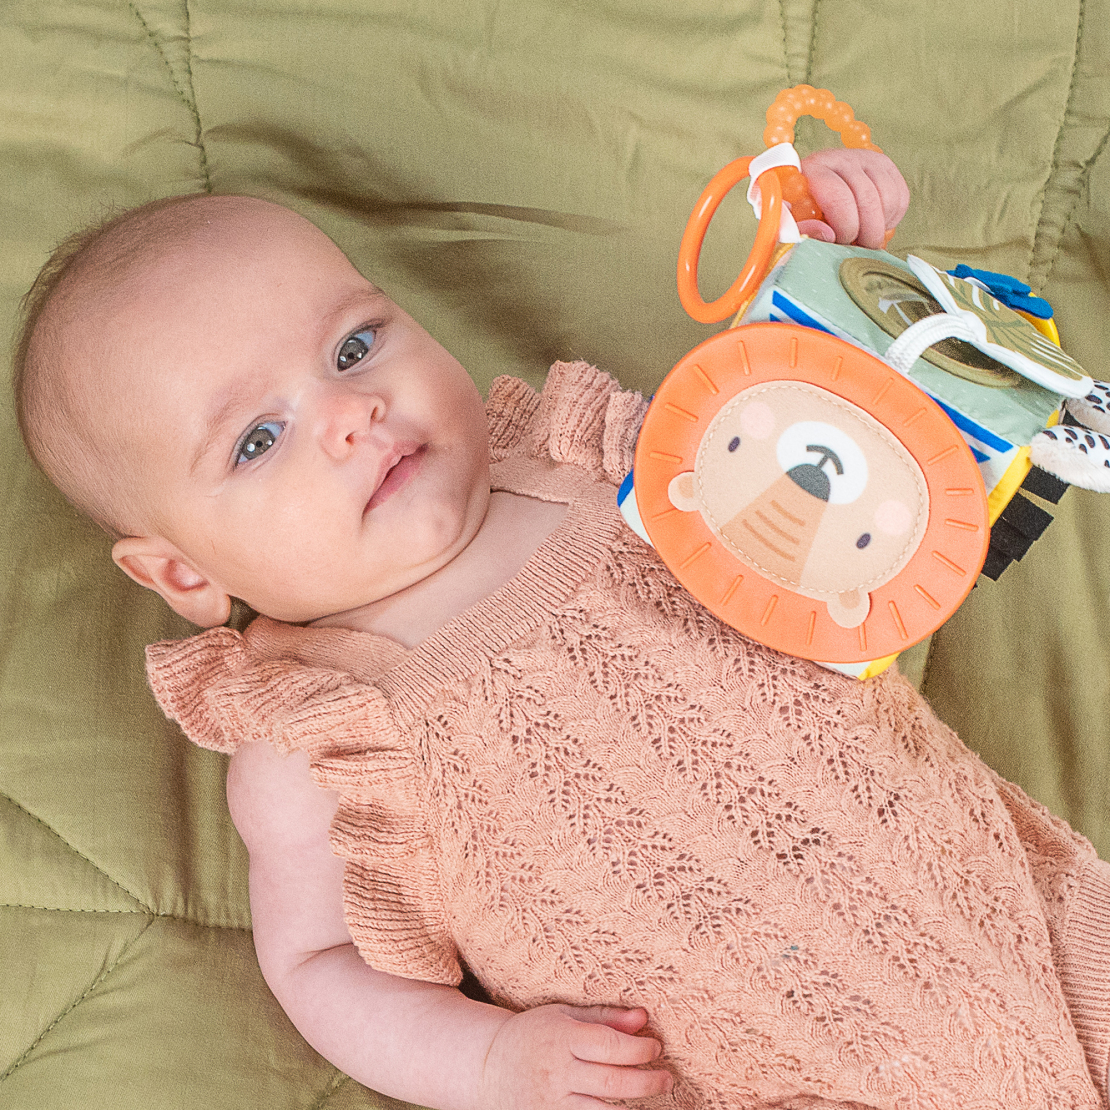 1# - כל אחד ישמח לבת : מתנת לידה ובה סל צבעוני קלוע המכיל קוביית סקרנות צבעונית אינטראקטיבית, שלישיית חיתולי טטרה וכובע לתינוק